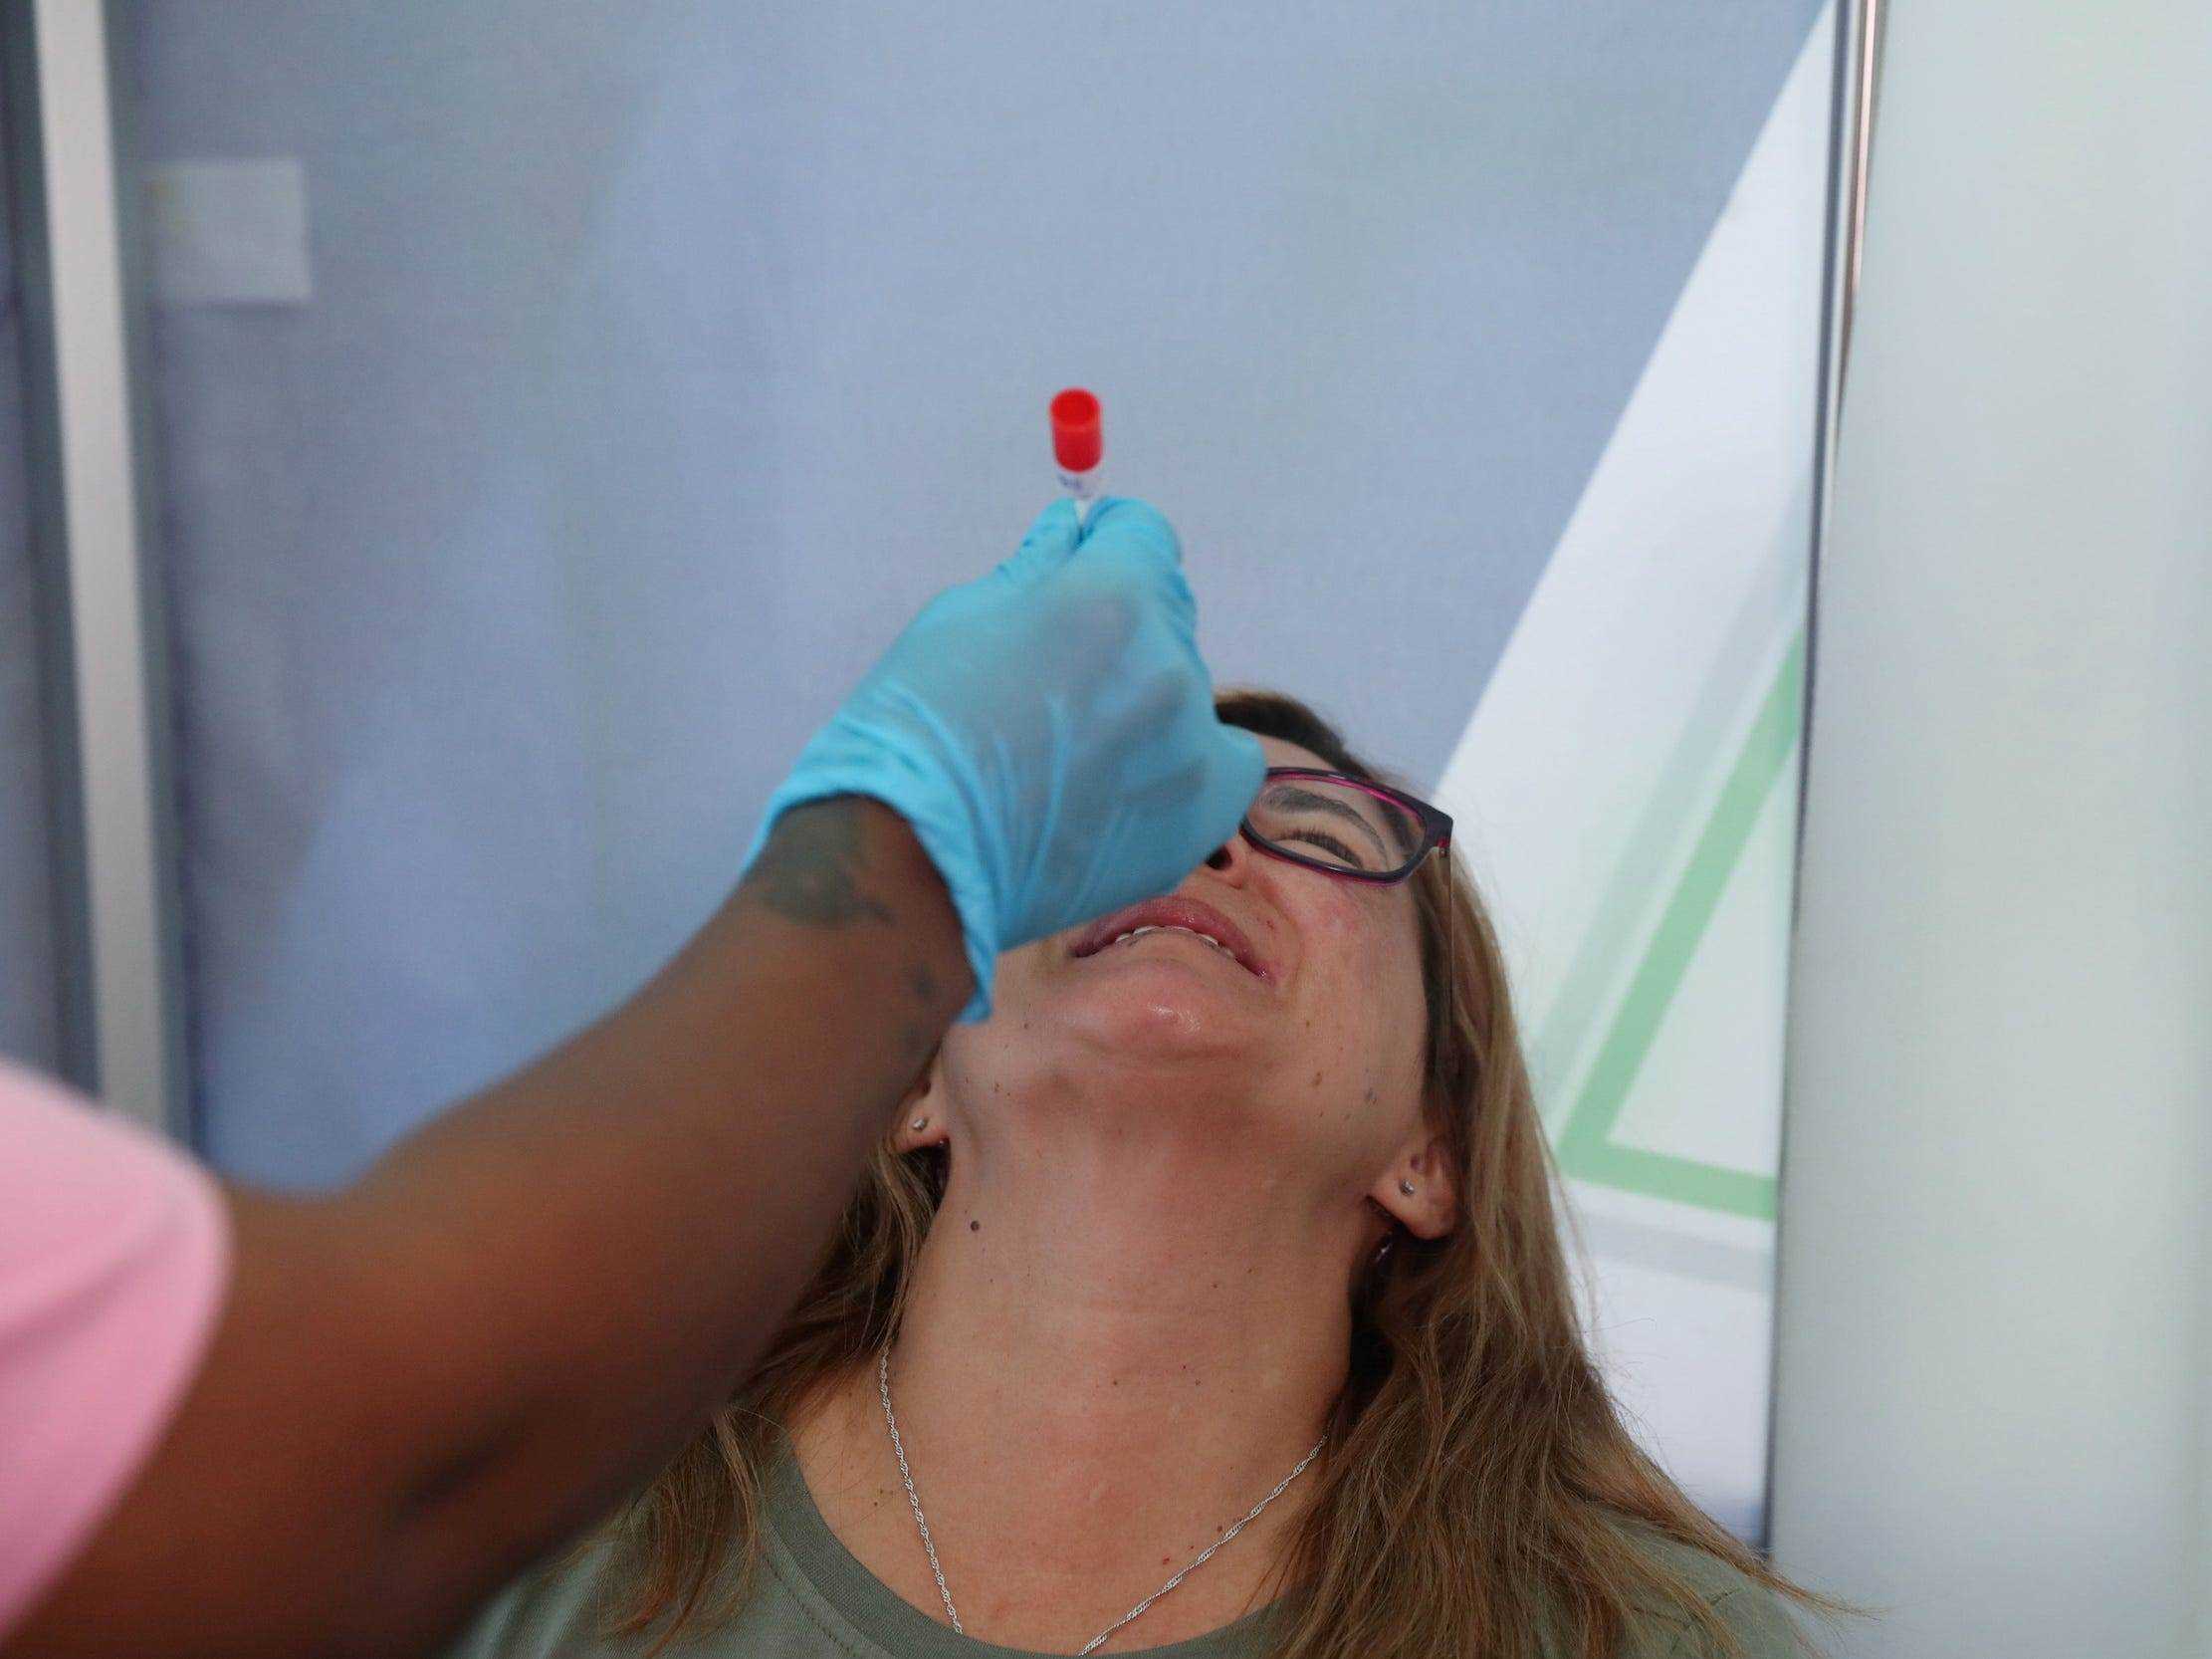 Gesundheitspersonal in Johannesburg, Südafrika, macht einem Reisenden einen Covid-Test, während sich die Omicron-Variante ausbreitet